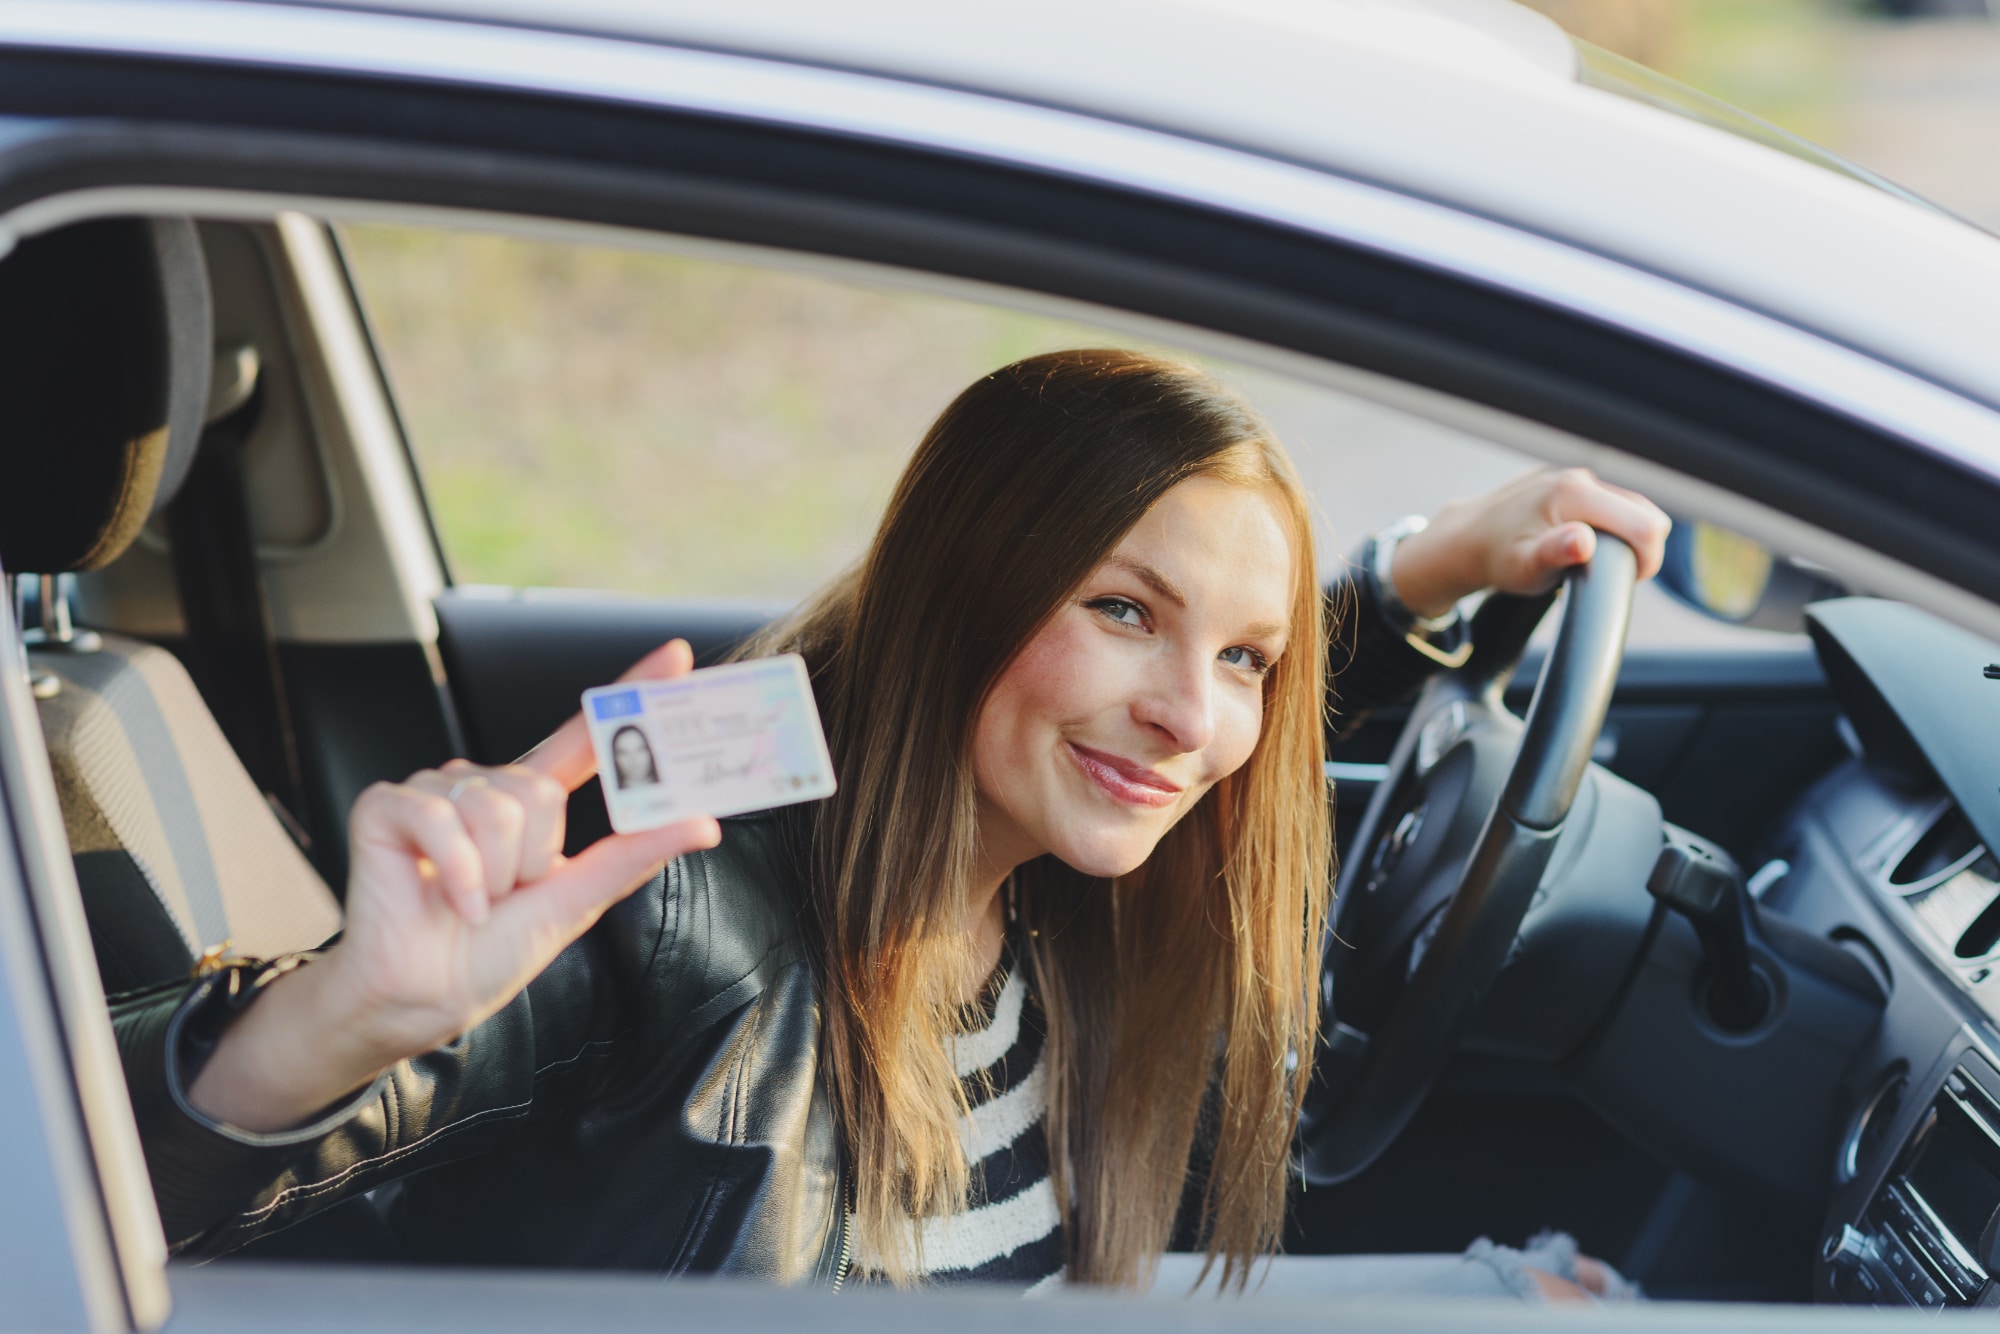 Nuori nainen istuu autossa ratin takana iloisena ja nayttaa ajokorttiiaan.